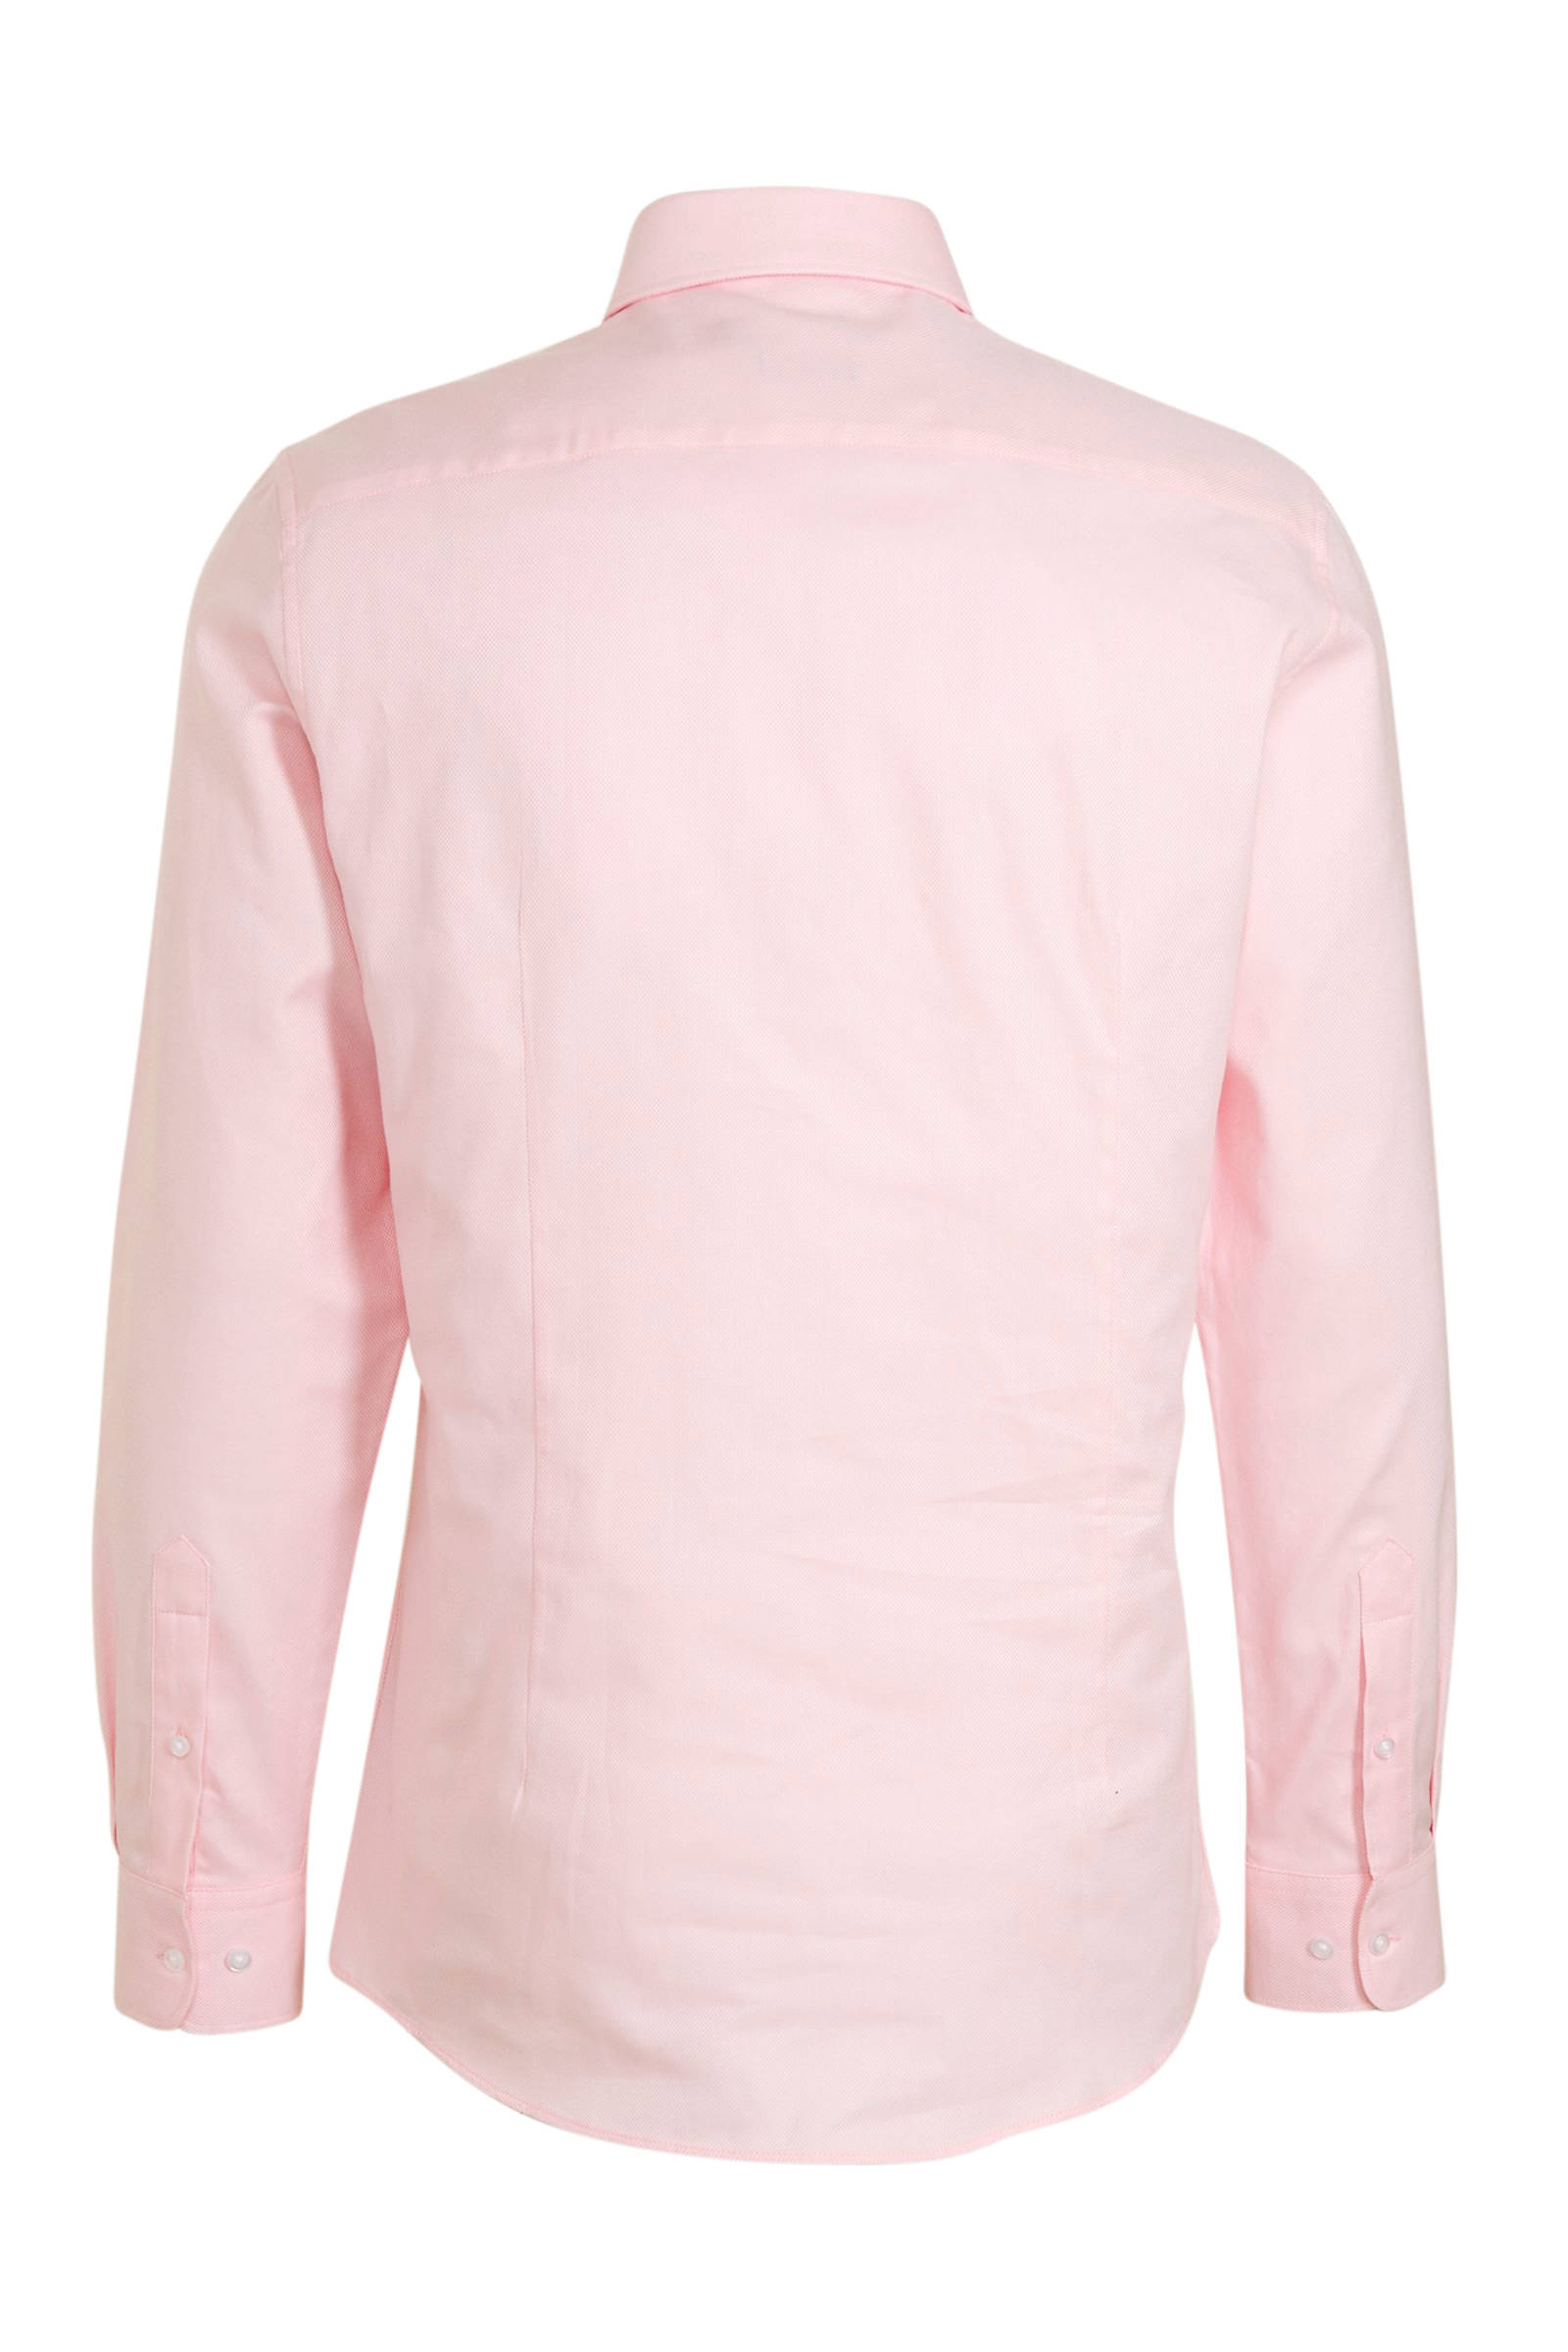 Ga door Inloggegevens vervolging Roze Overhemd Heren C&a Greece, SAVE 34% - piv-phuket.com